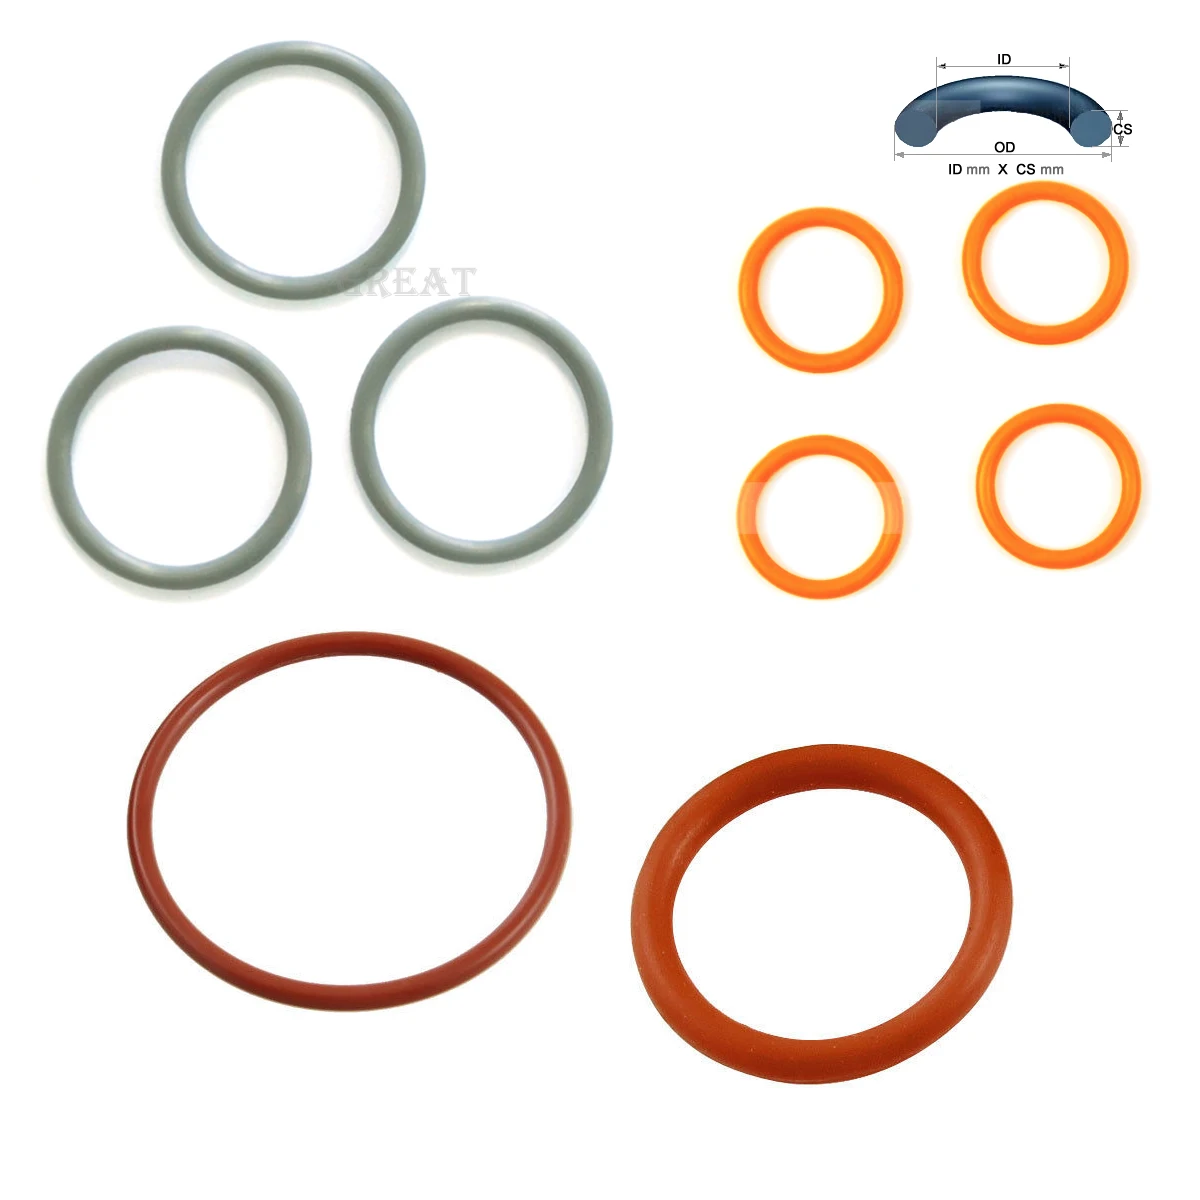 5X0.5 Oring 5mm ID X 0.5mm CS EPDM Ethylene Propylene O ring O-ring Sealing  Rubber - AliExpress